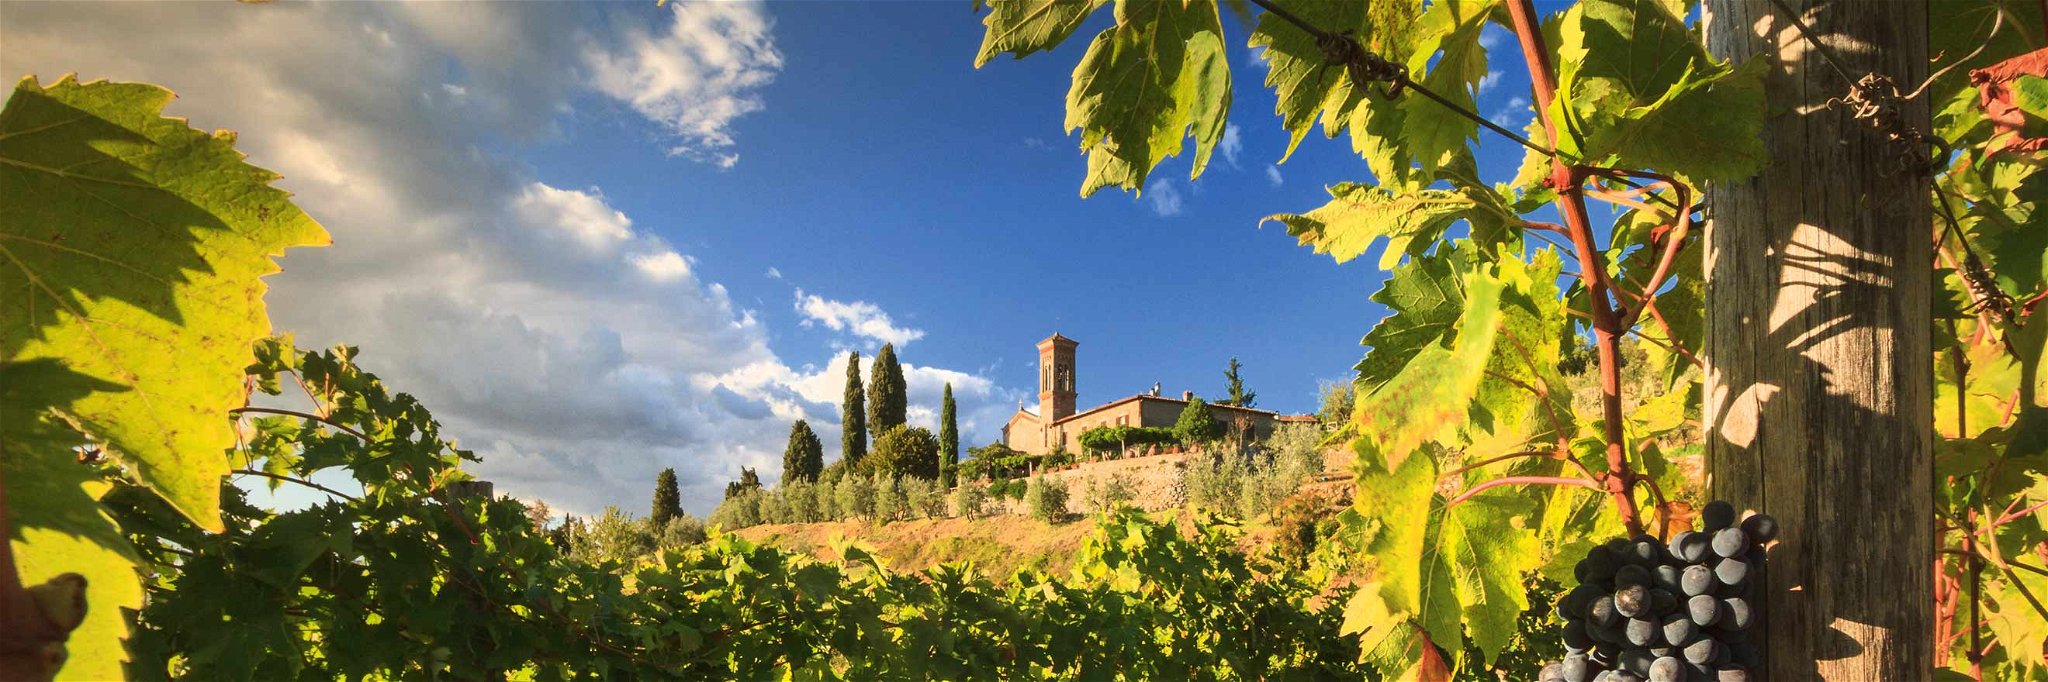 In der malerischen Landschaft des Chianti Classico entstehen einzigartige Weine.&nbsp;